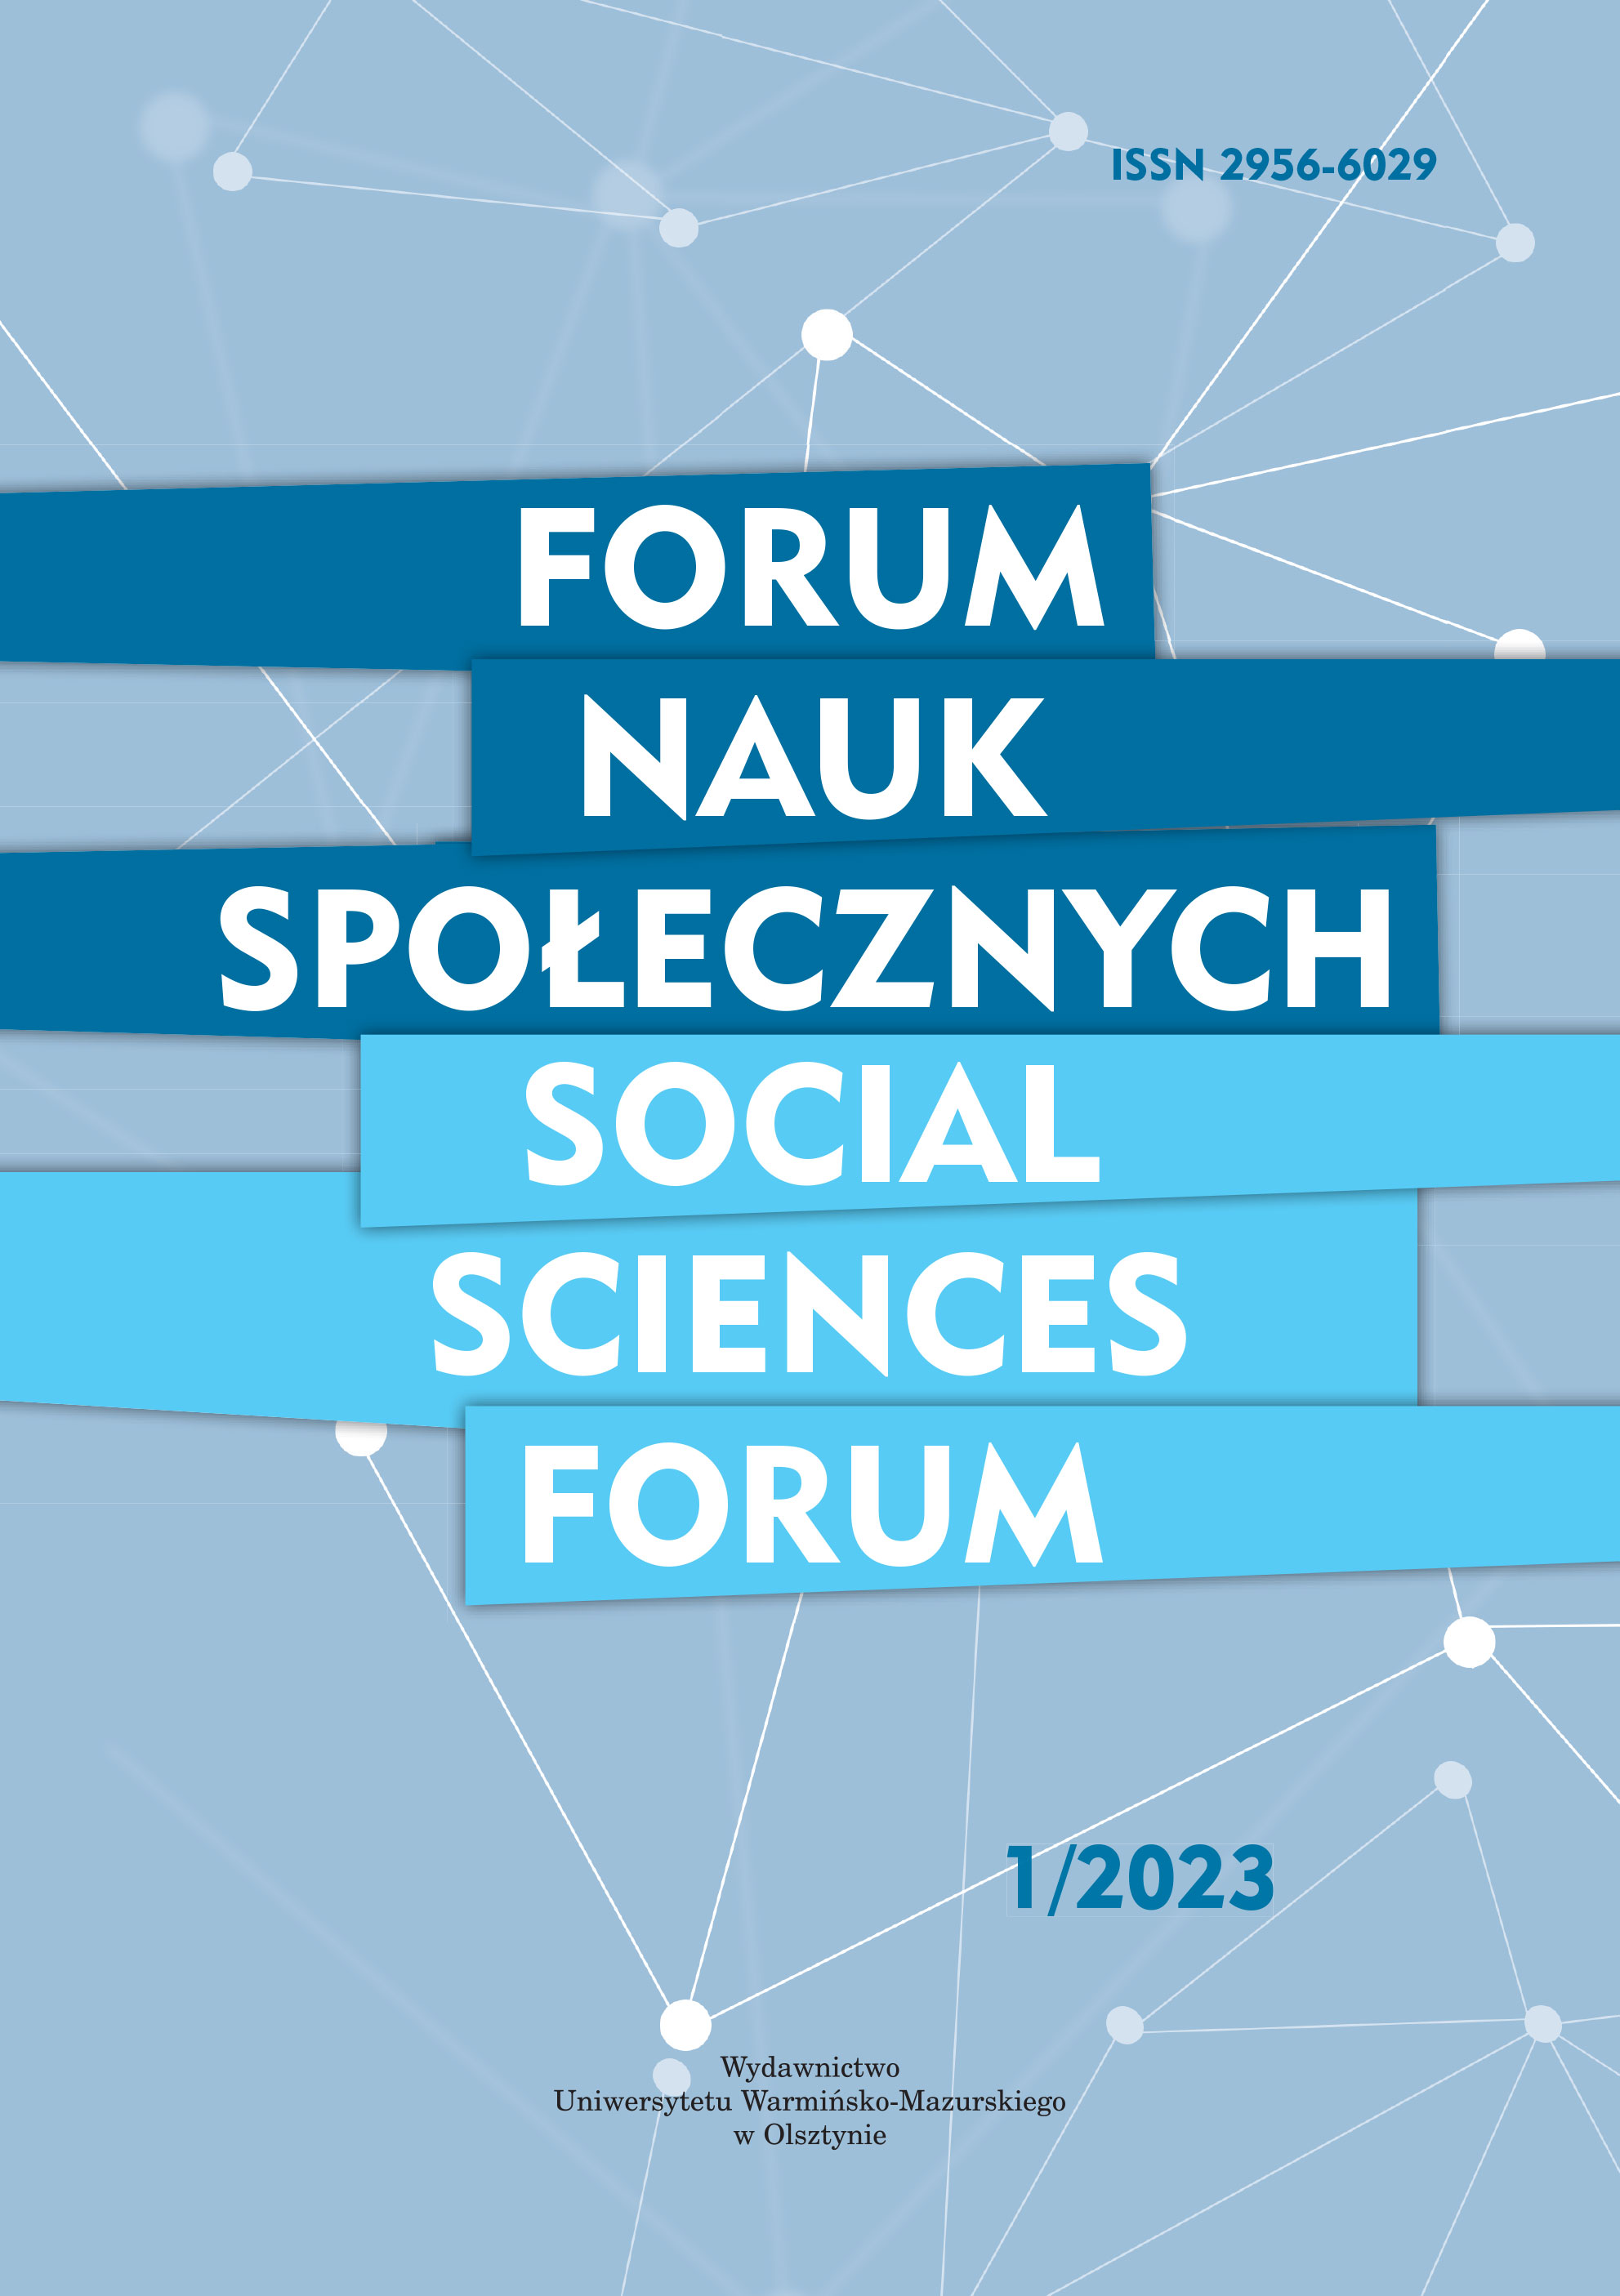 Social Sciences Forum